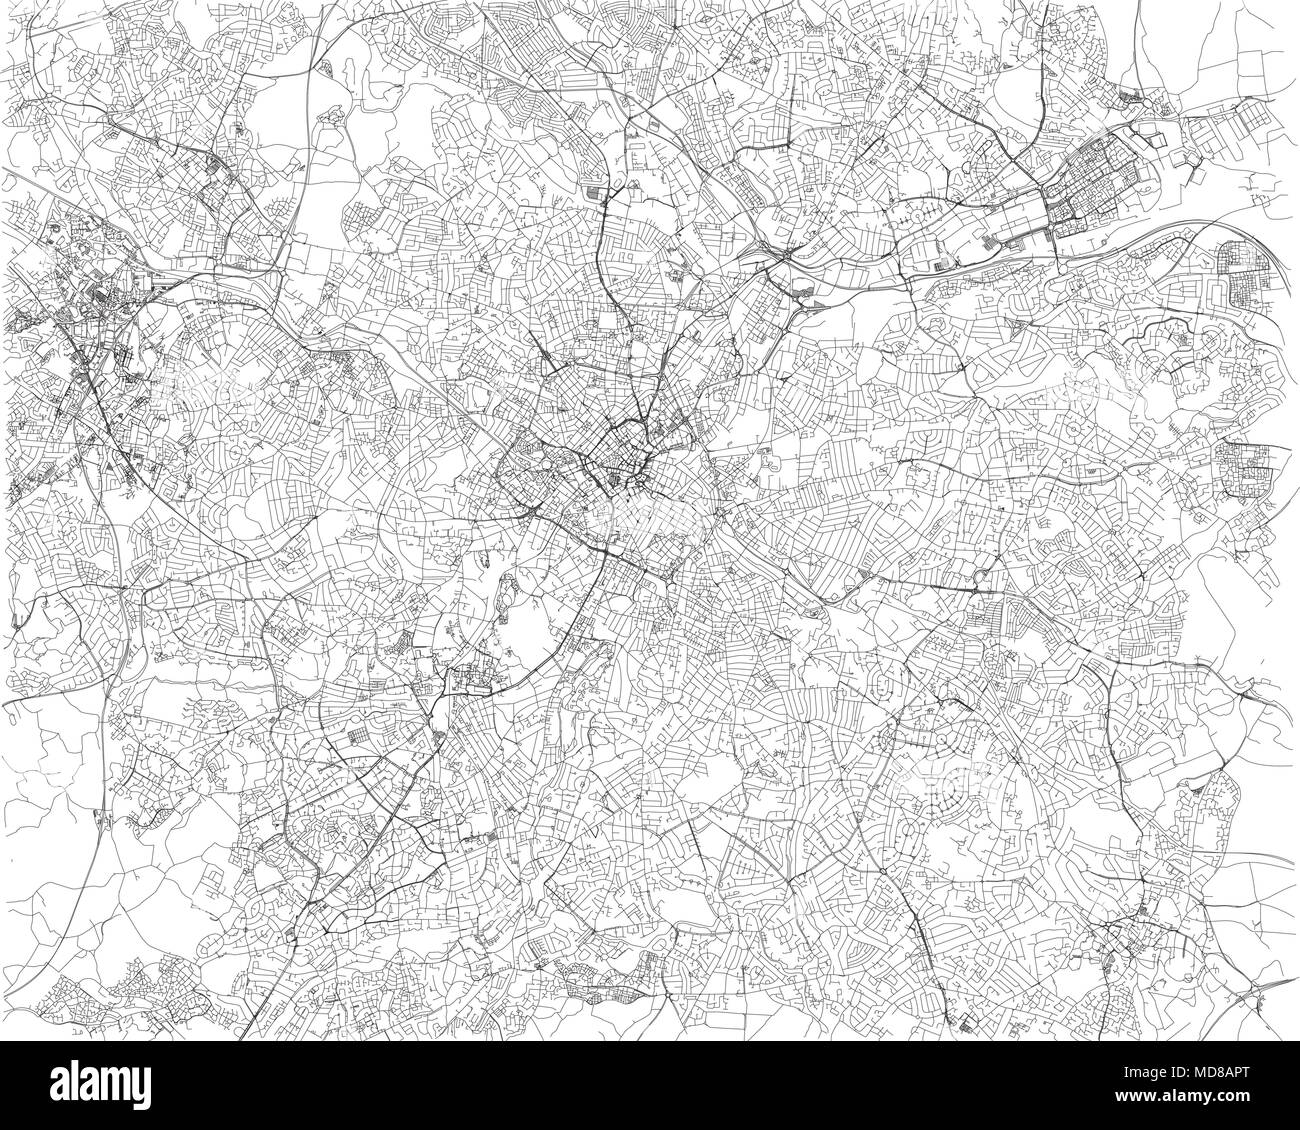 Birmingham Karte, Satellit, Stadt, England. Straßen anzuzeigen. Vereinigtes Königreich Stock Vektor